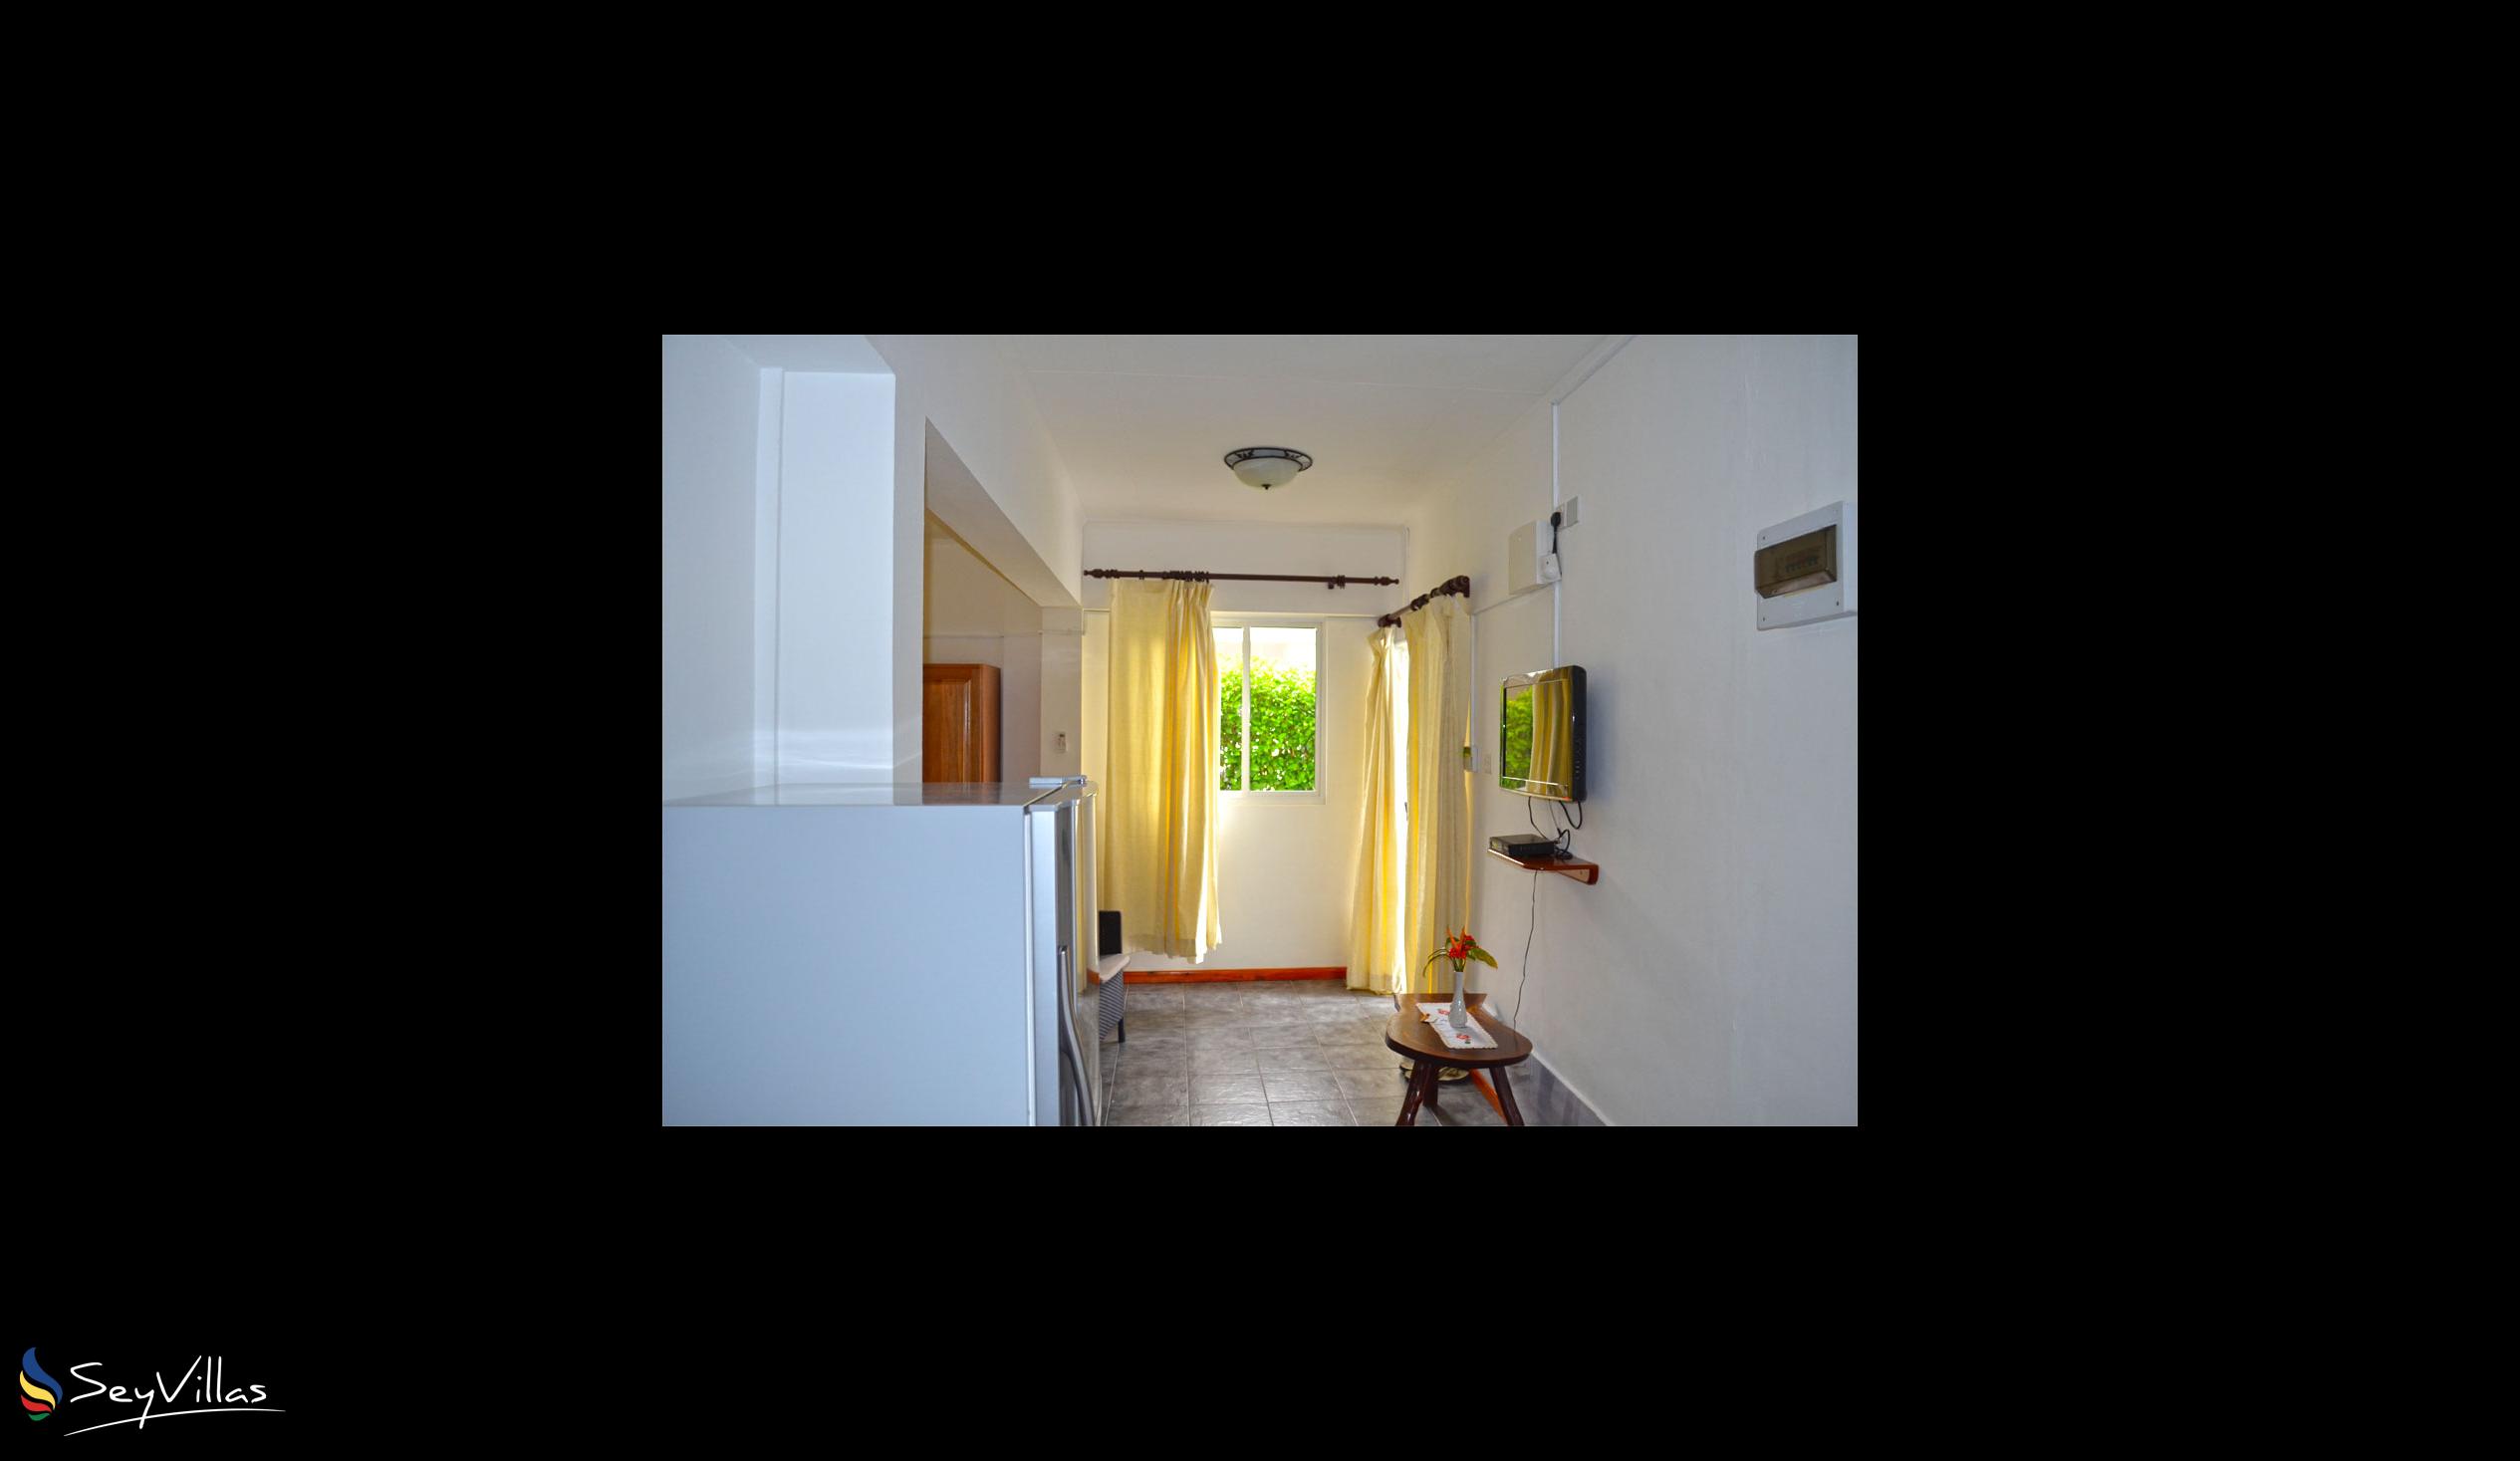 Photo 40: Row's Villa - Small apartment - Mahé (Seychelles)